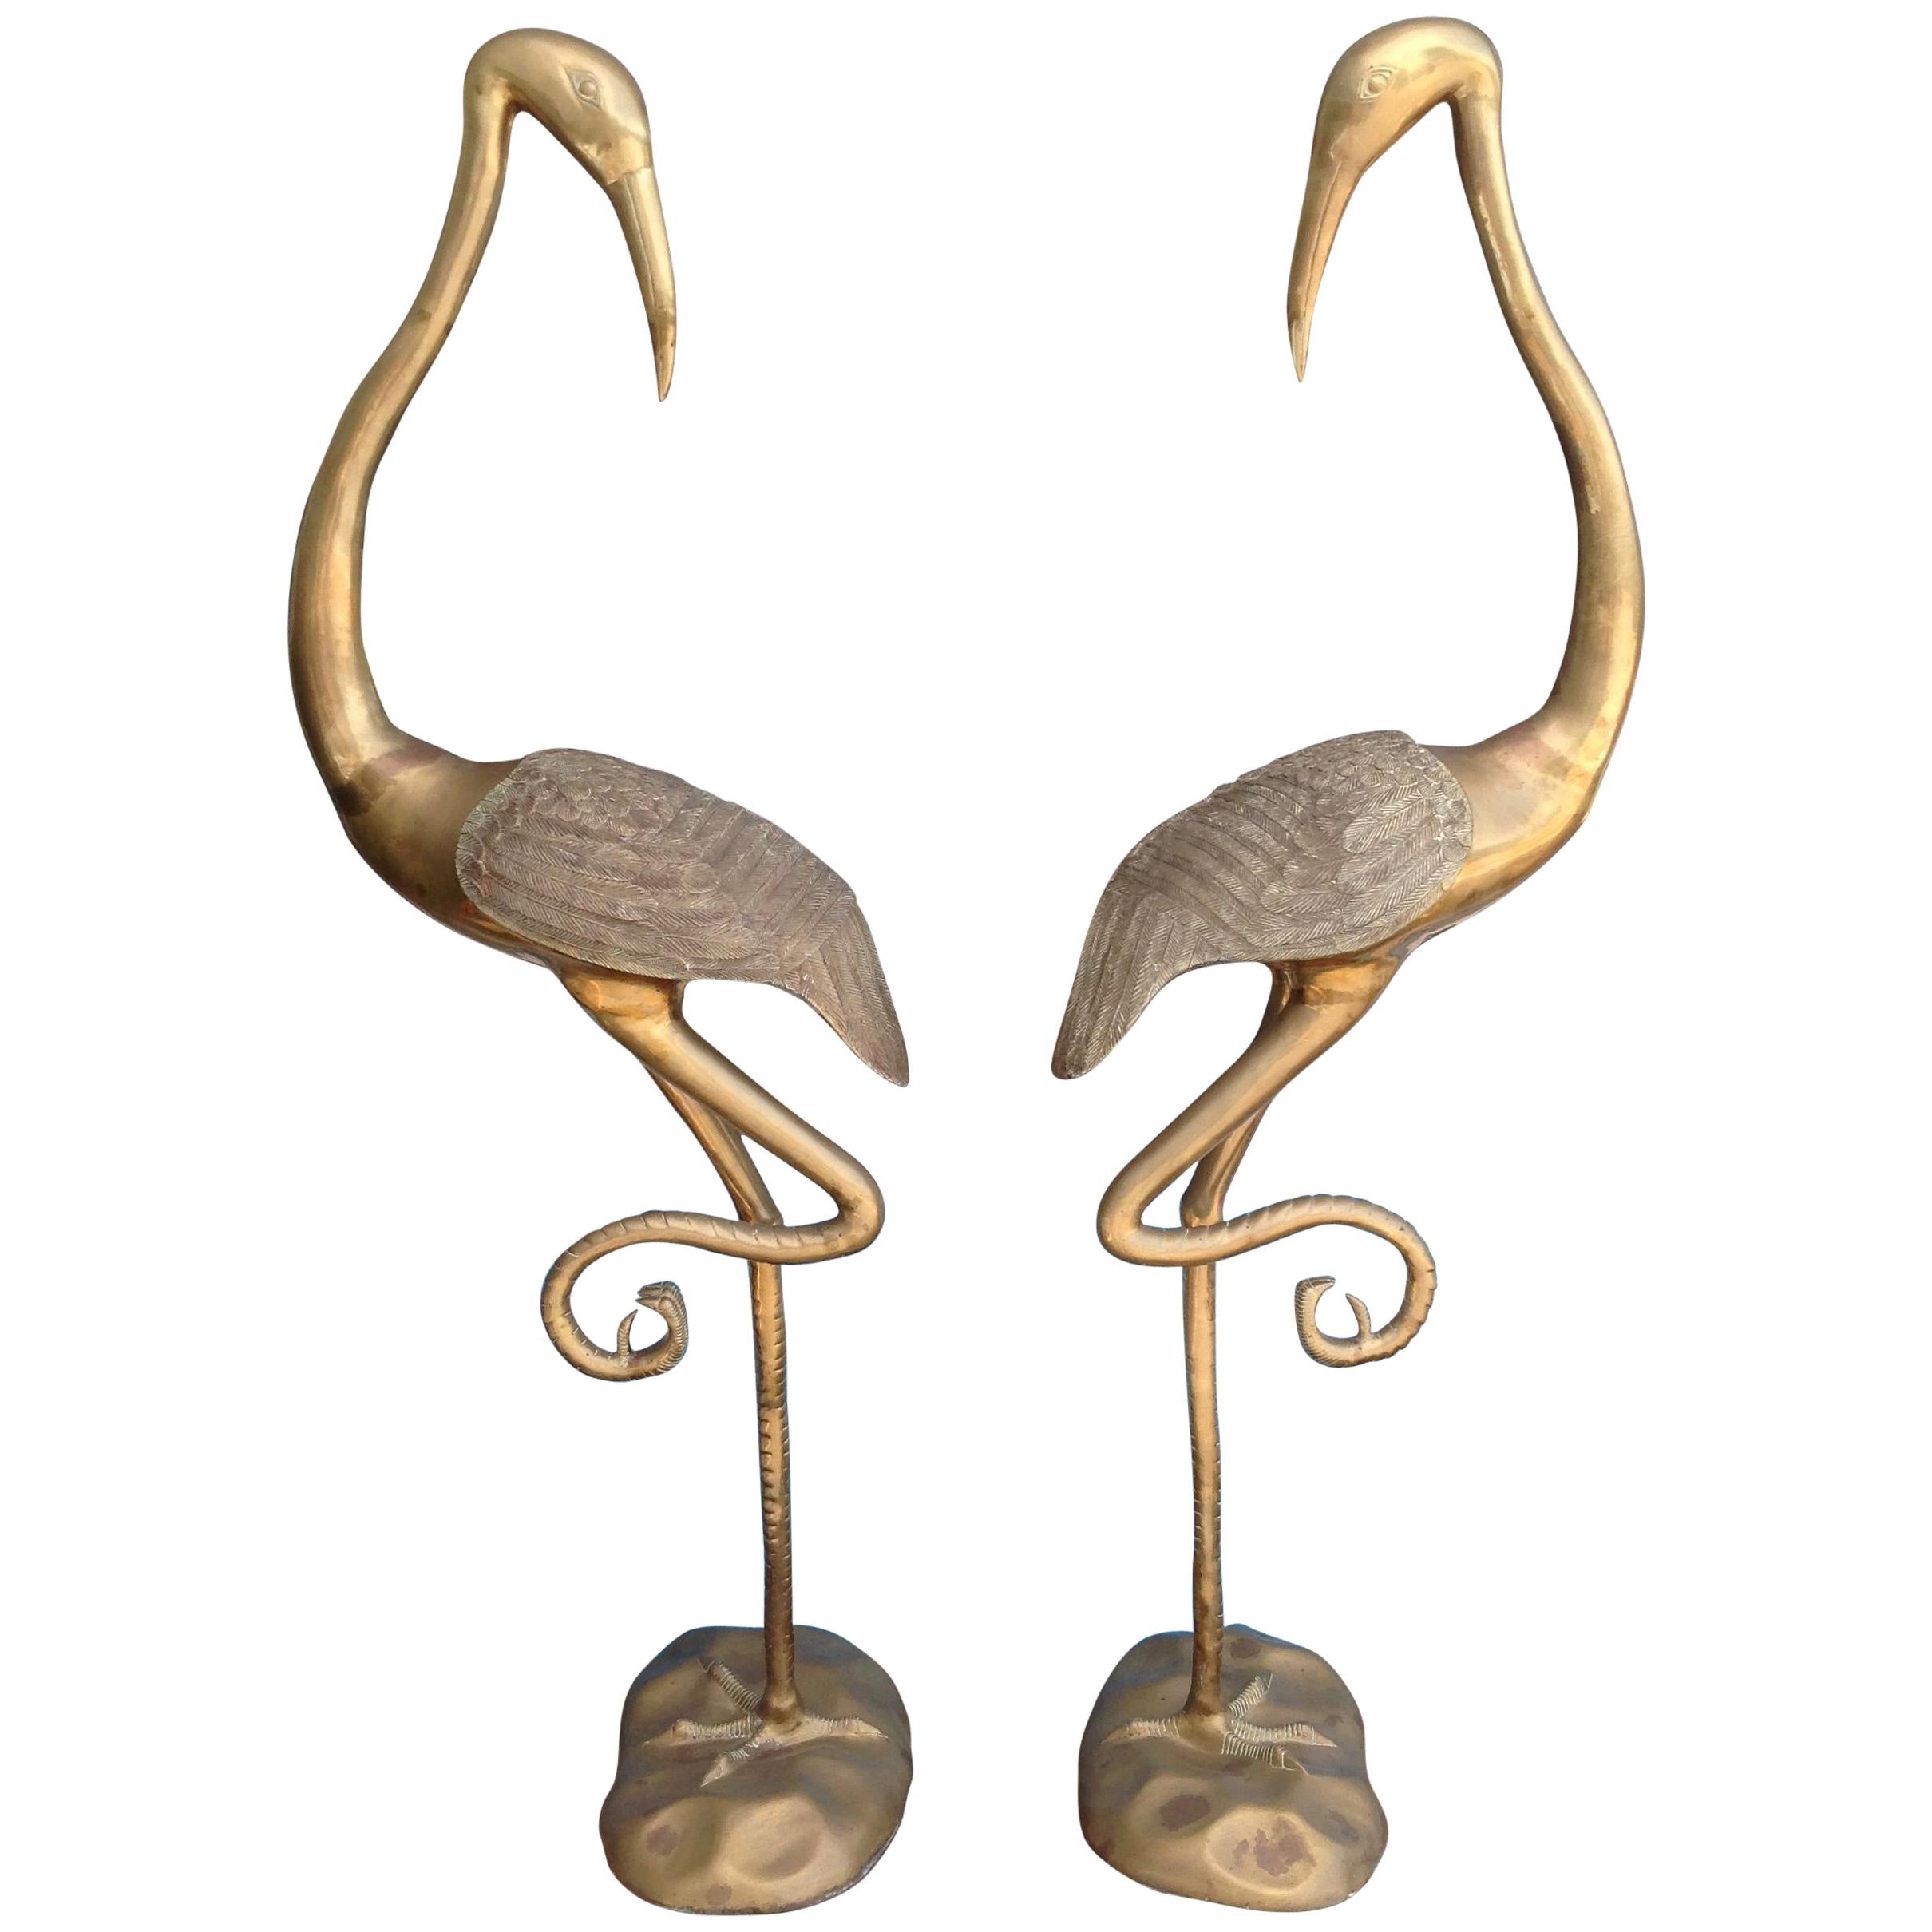 Pair of Midcentury Brass Figures of Cranes